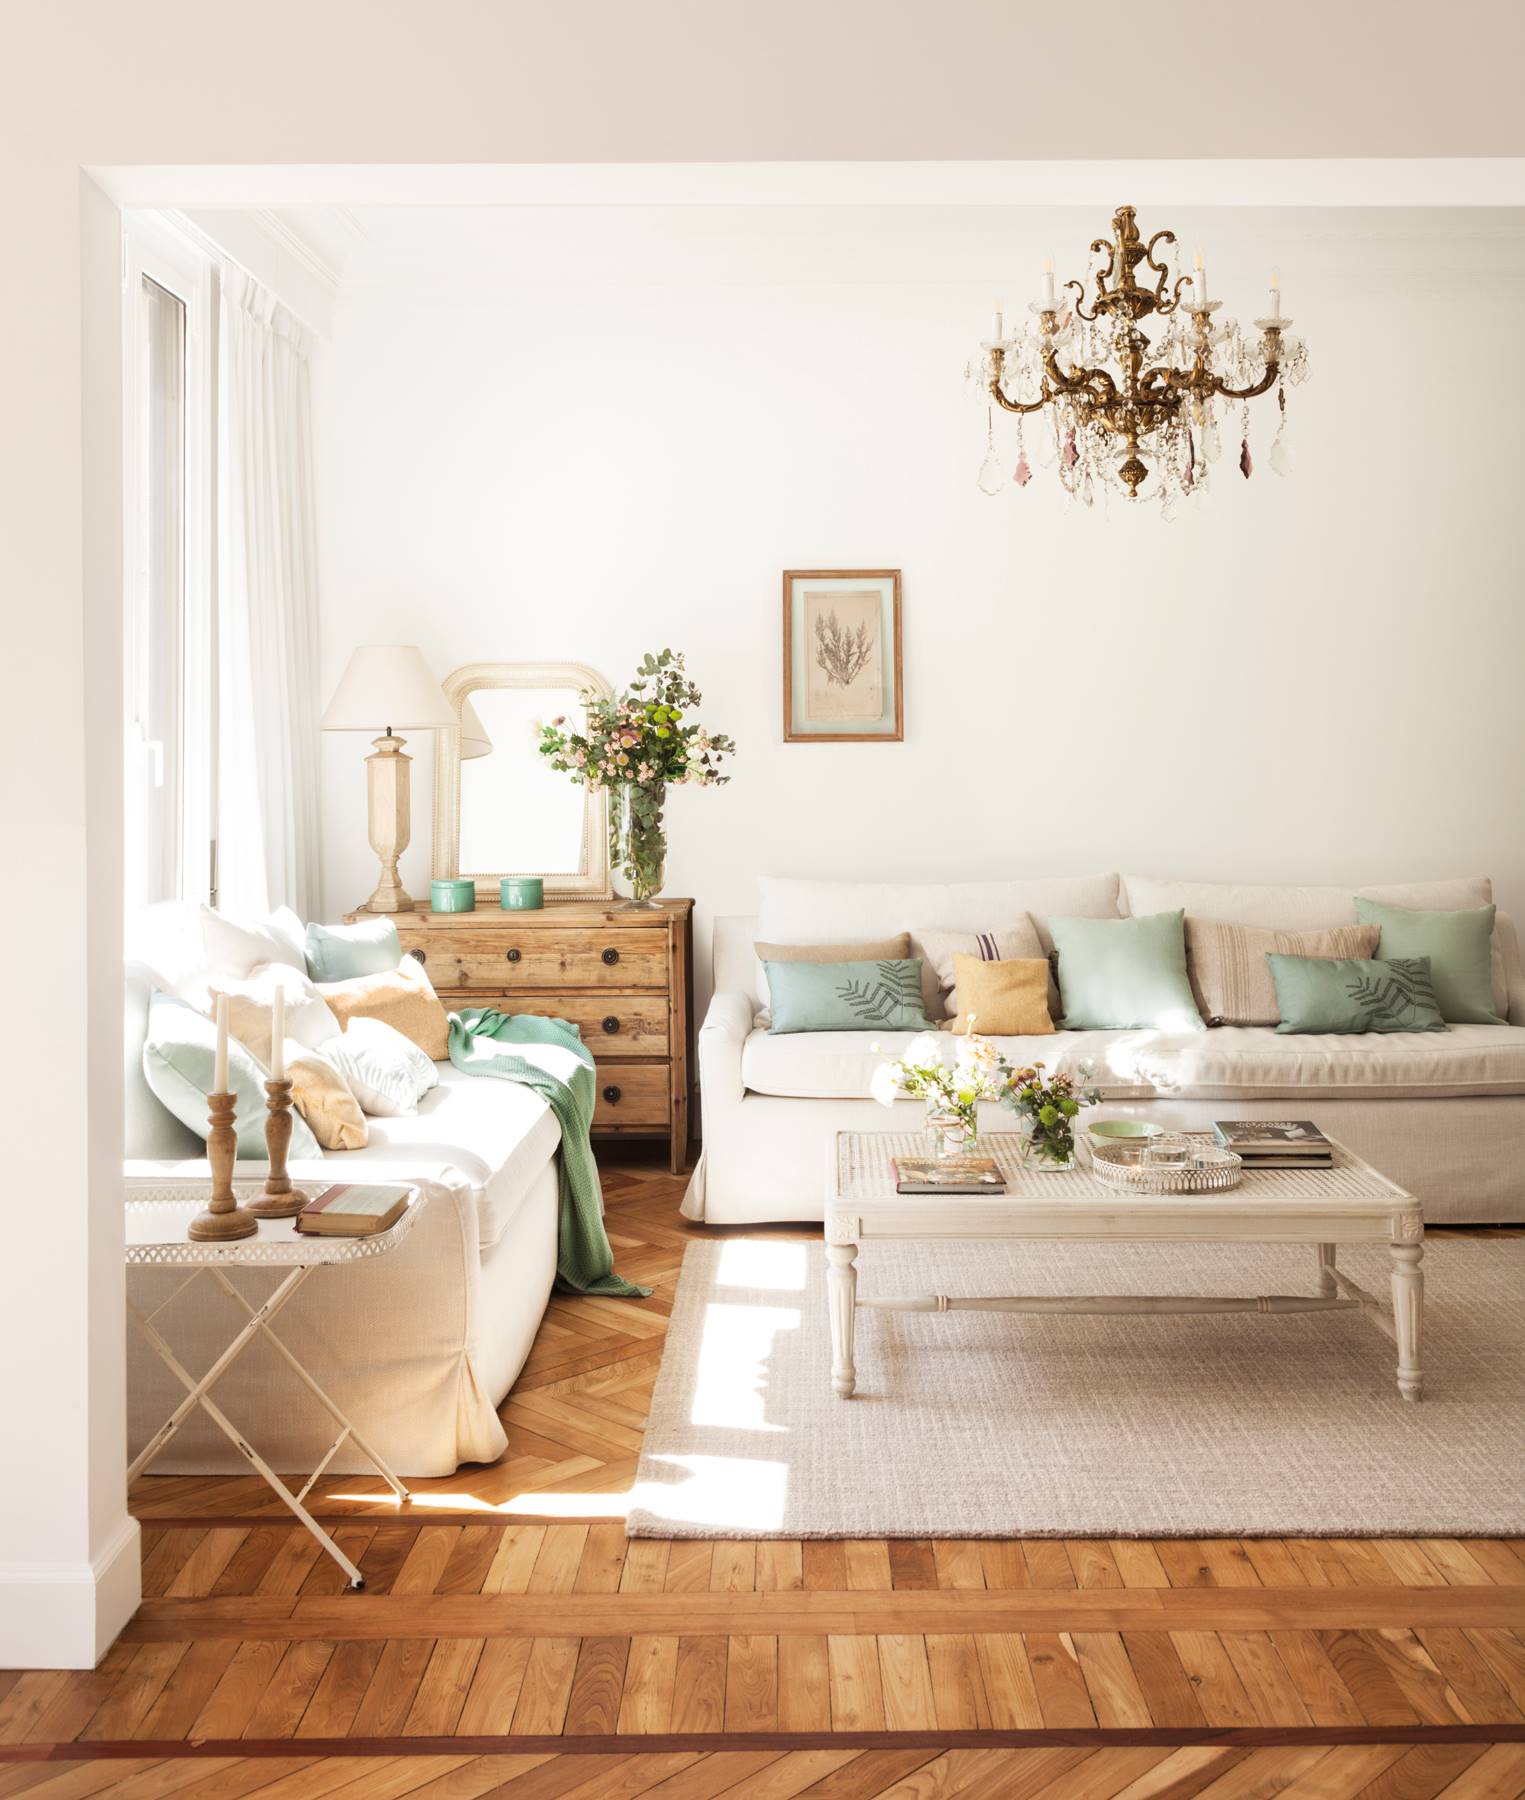 Salón de estilo clásico con suelos de madera y sofás beige. 